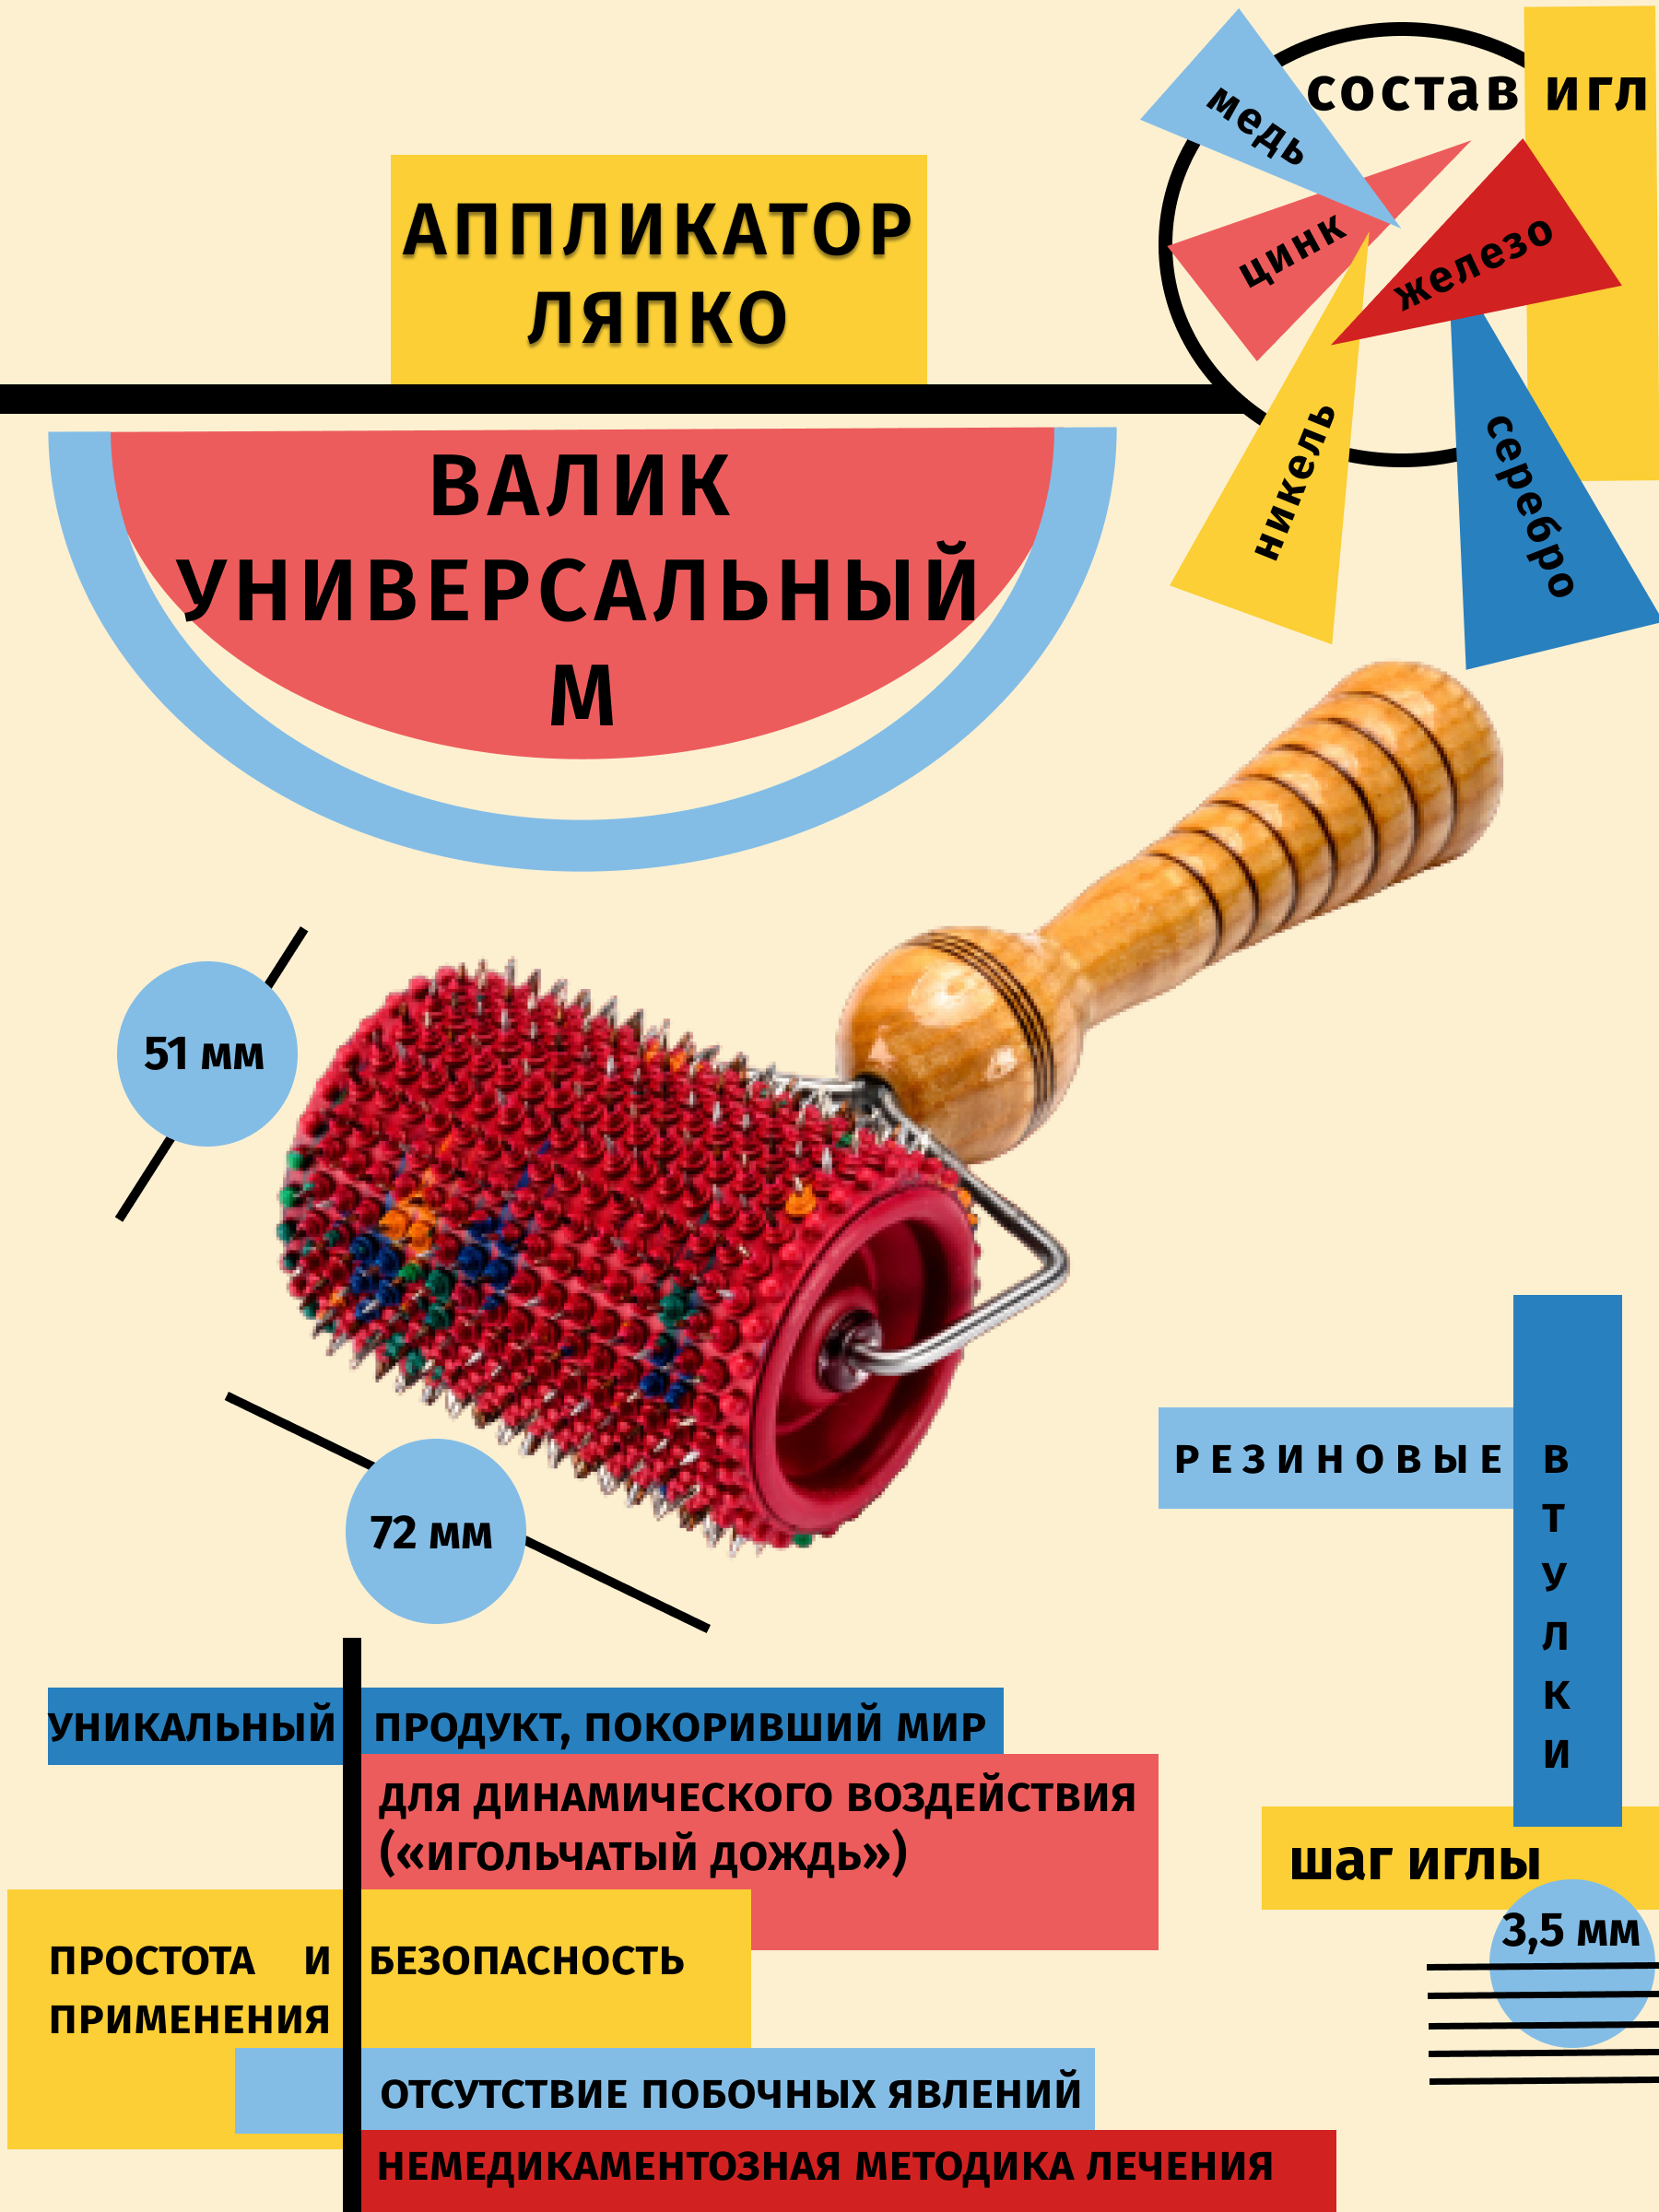 Аппликатор Ляпко Валик универсальный шаг игл 3,5 мм цвет: красный (диаметр-51 мм, ширина-72 мм)